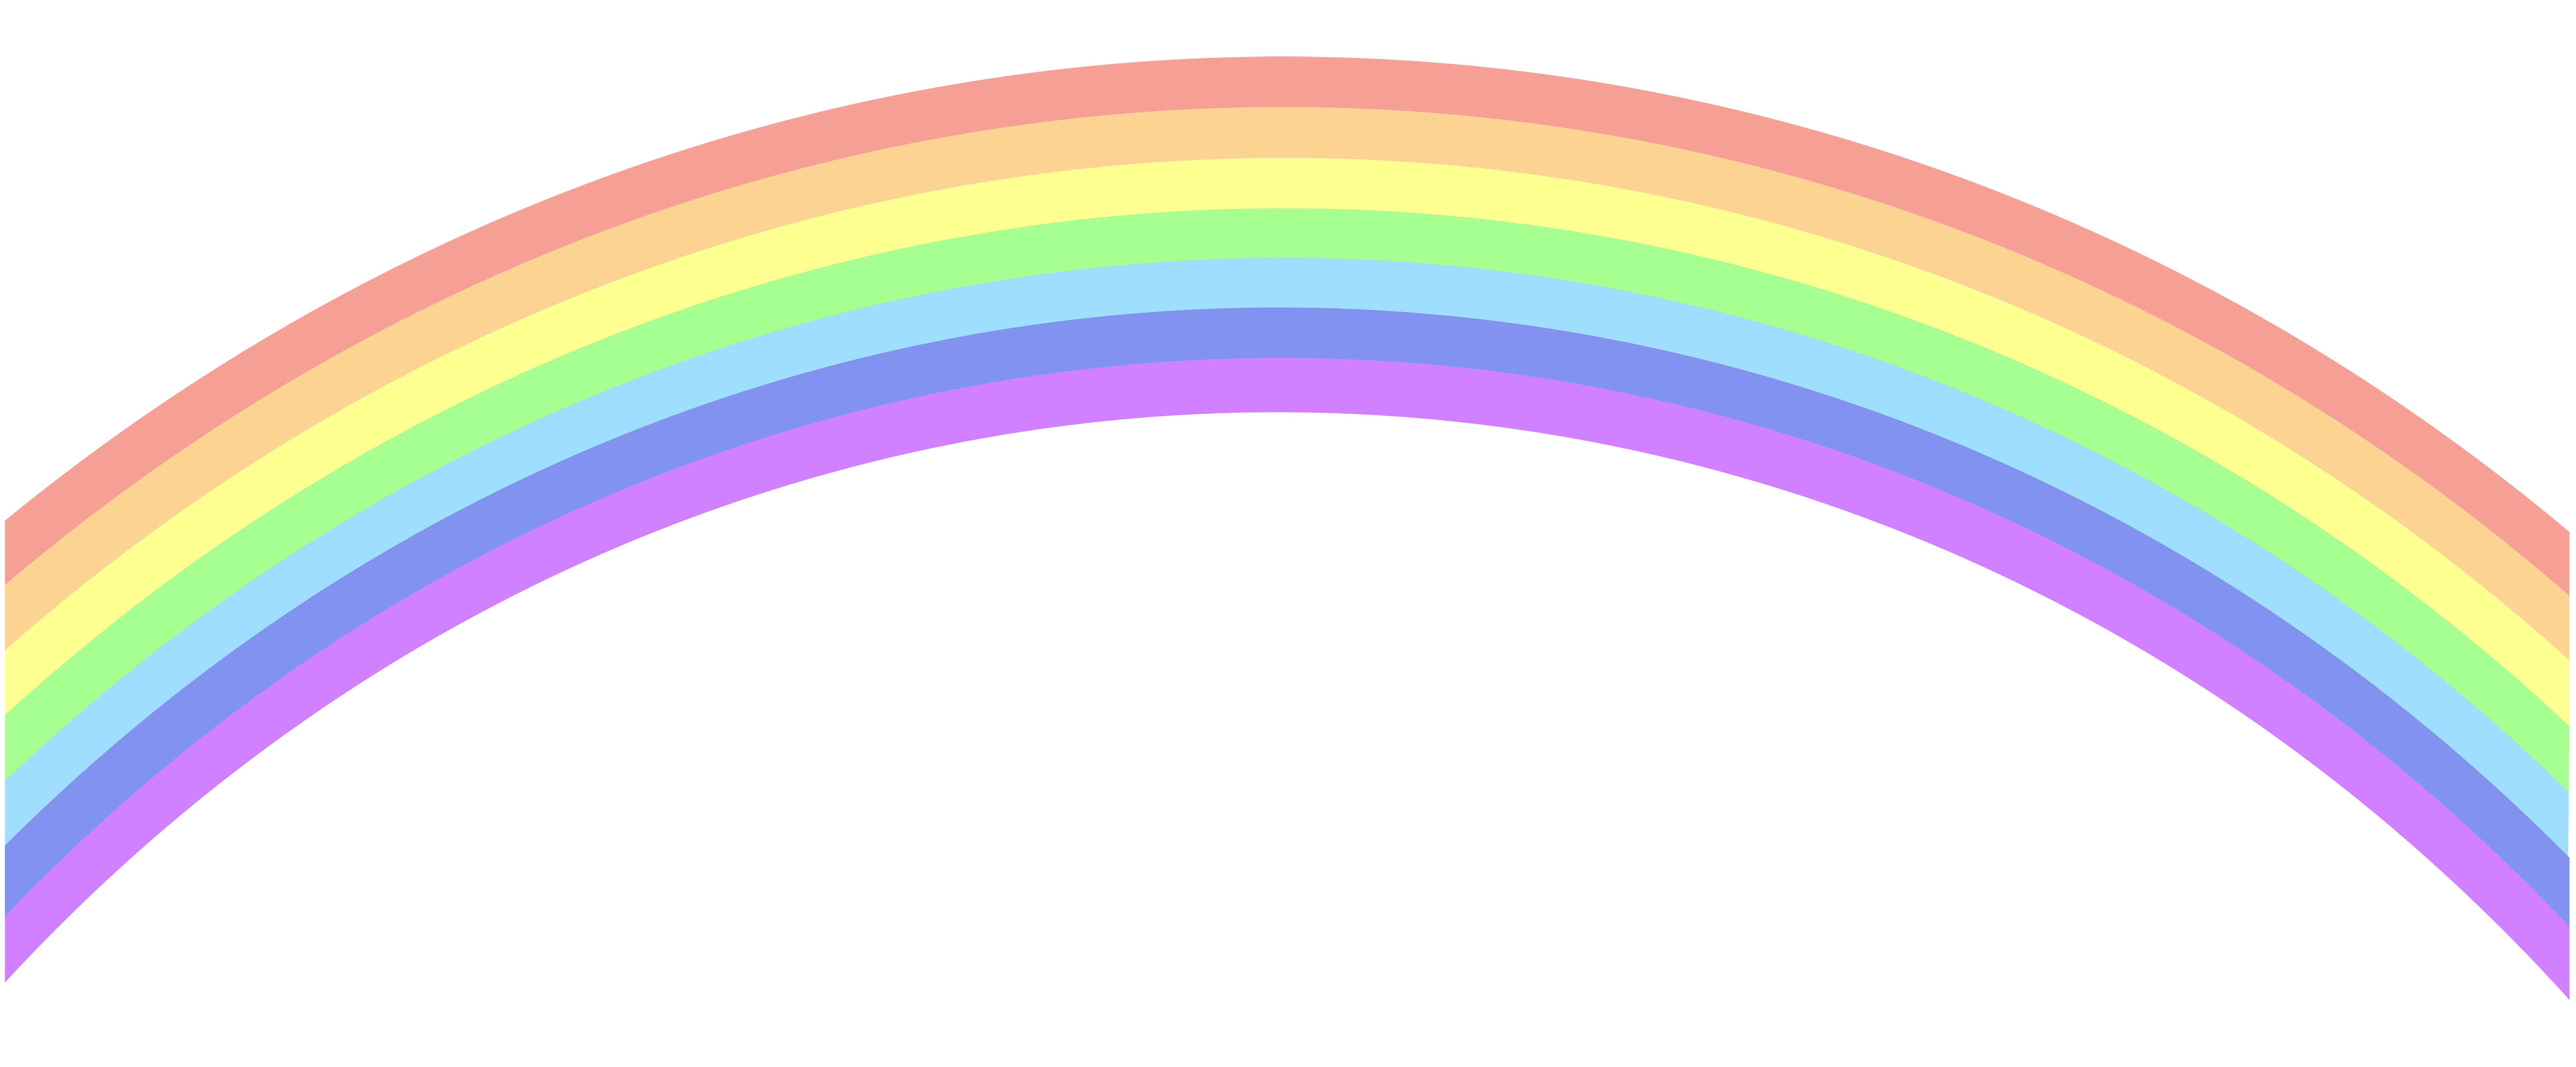 Rainbow clipart 